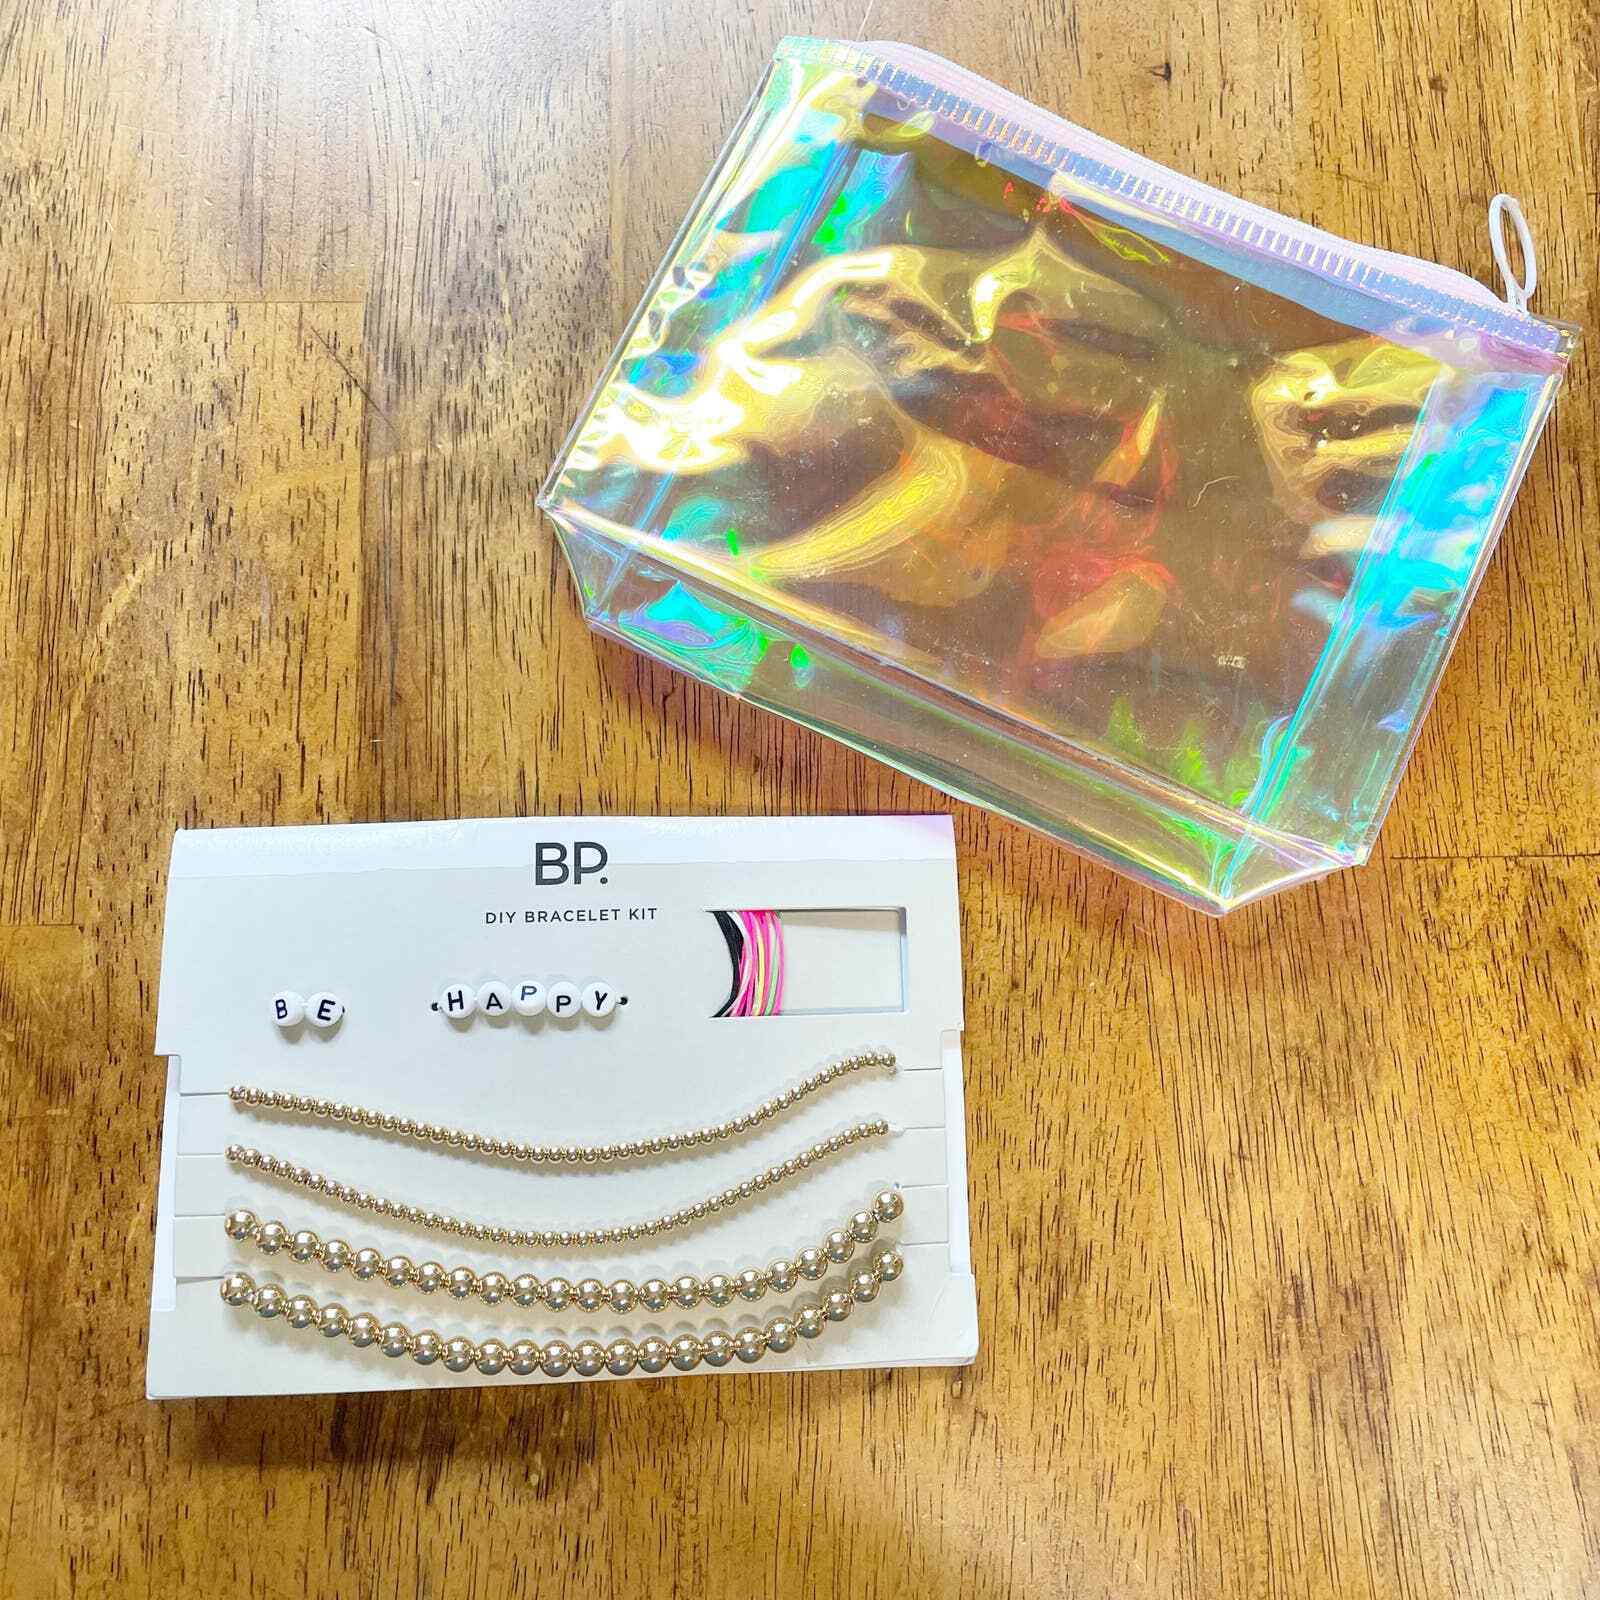 Bp Diy Bracelet Kit Letter Beads Gold Bead Bracelets